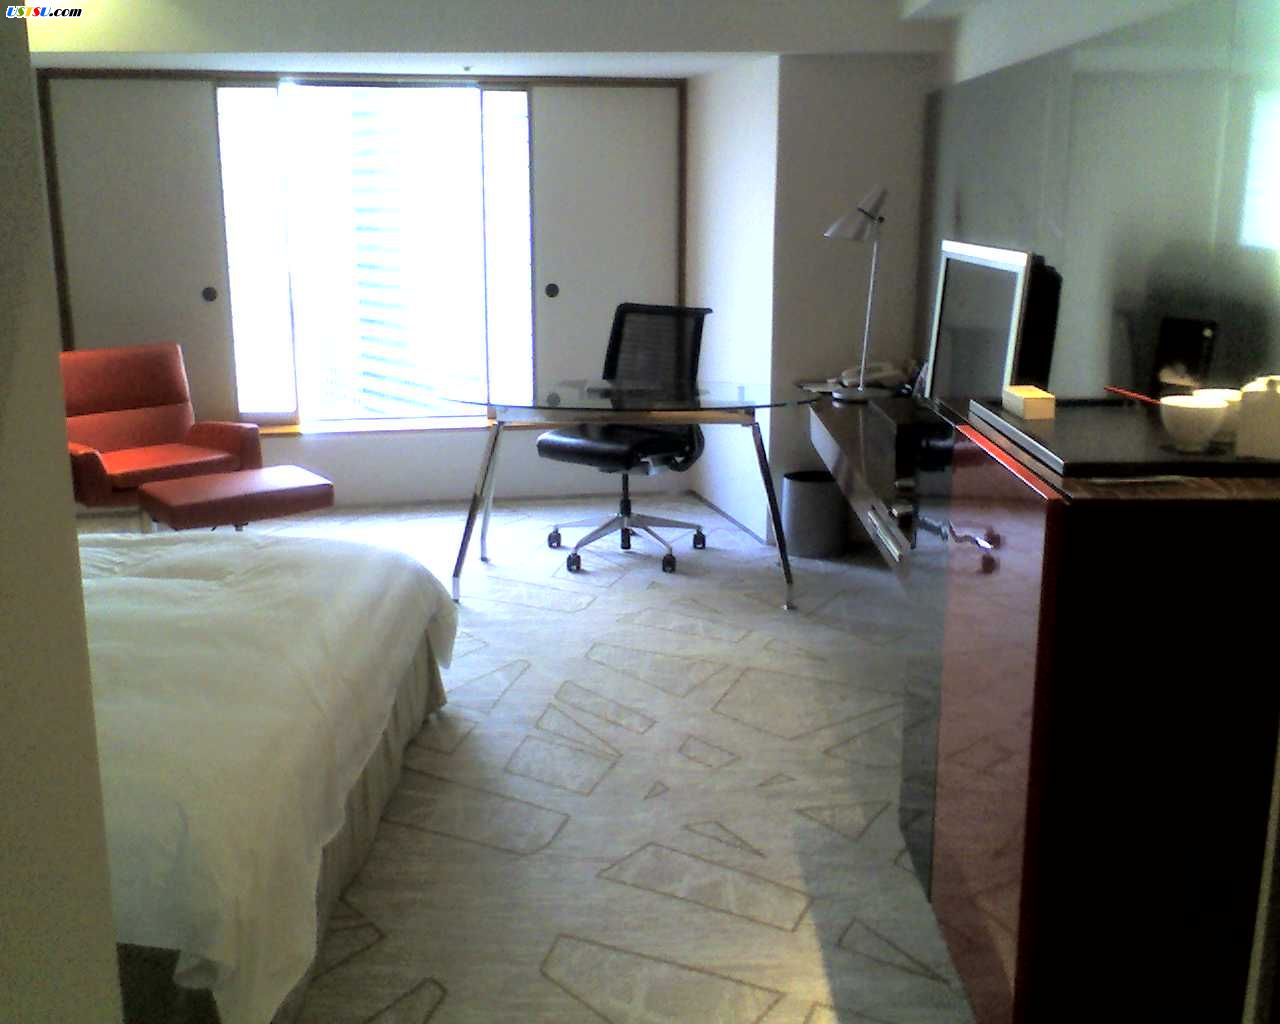 Hilton_Room1.jpg